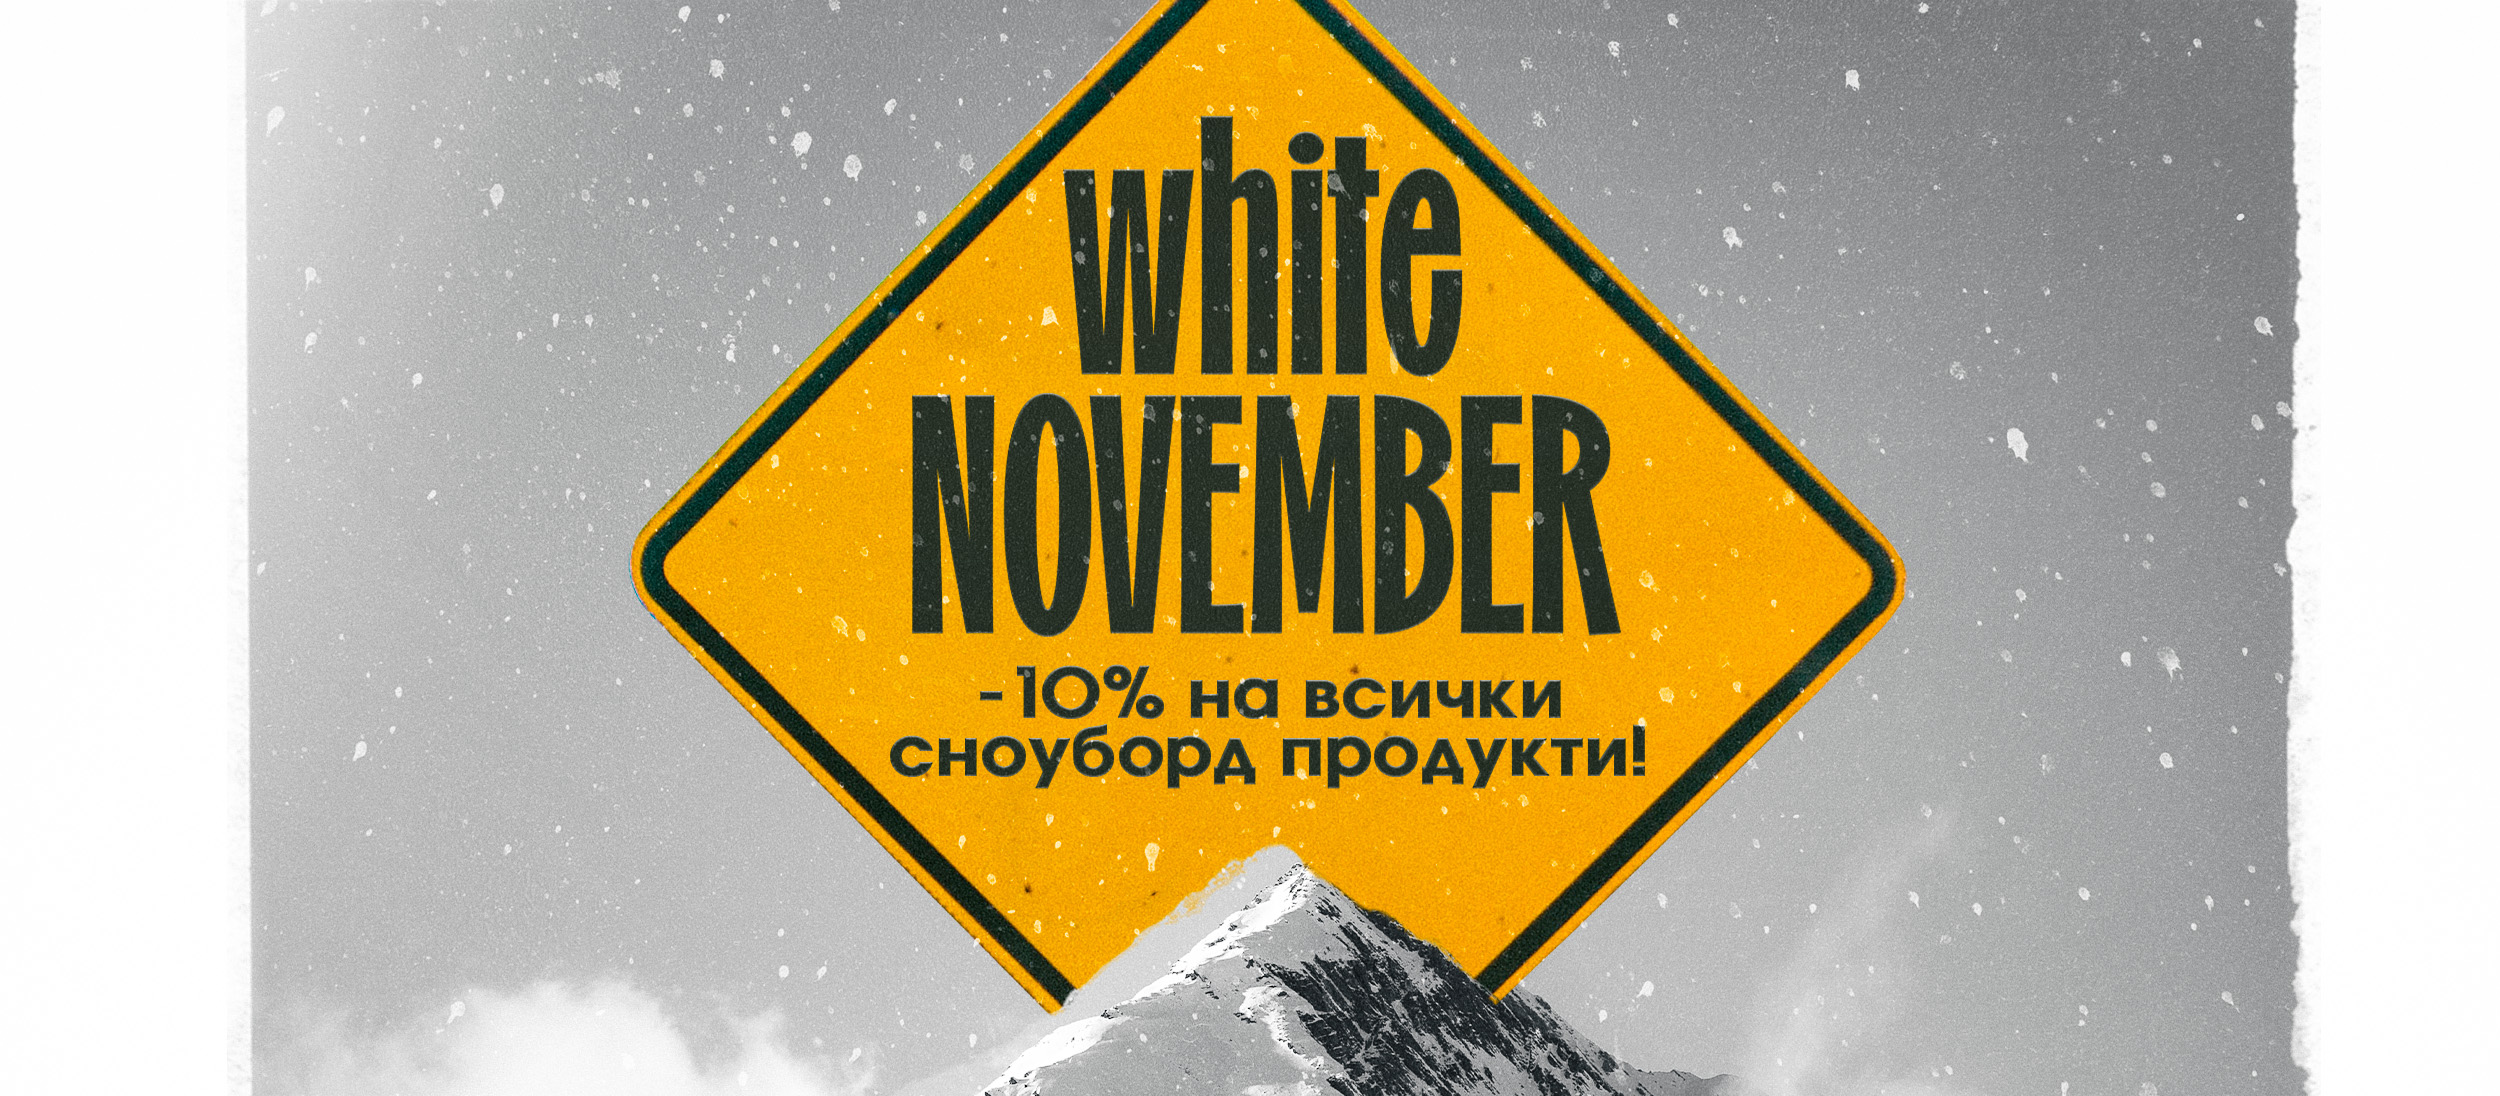 White November